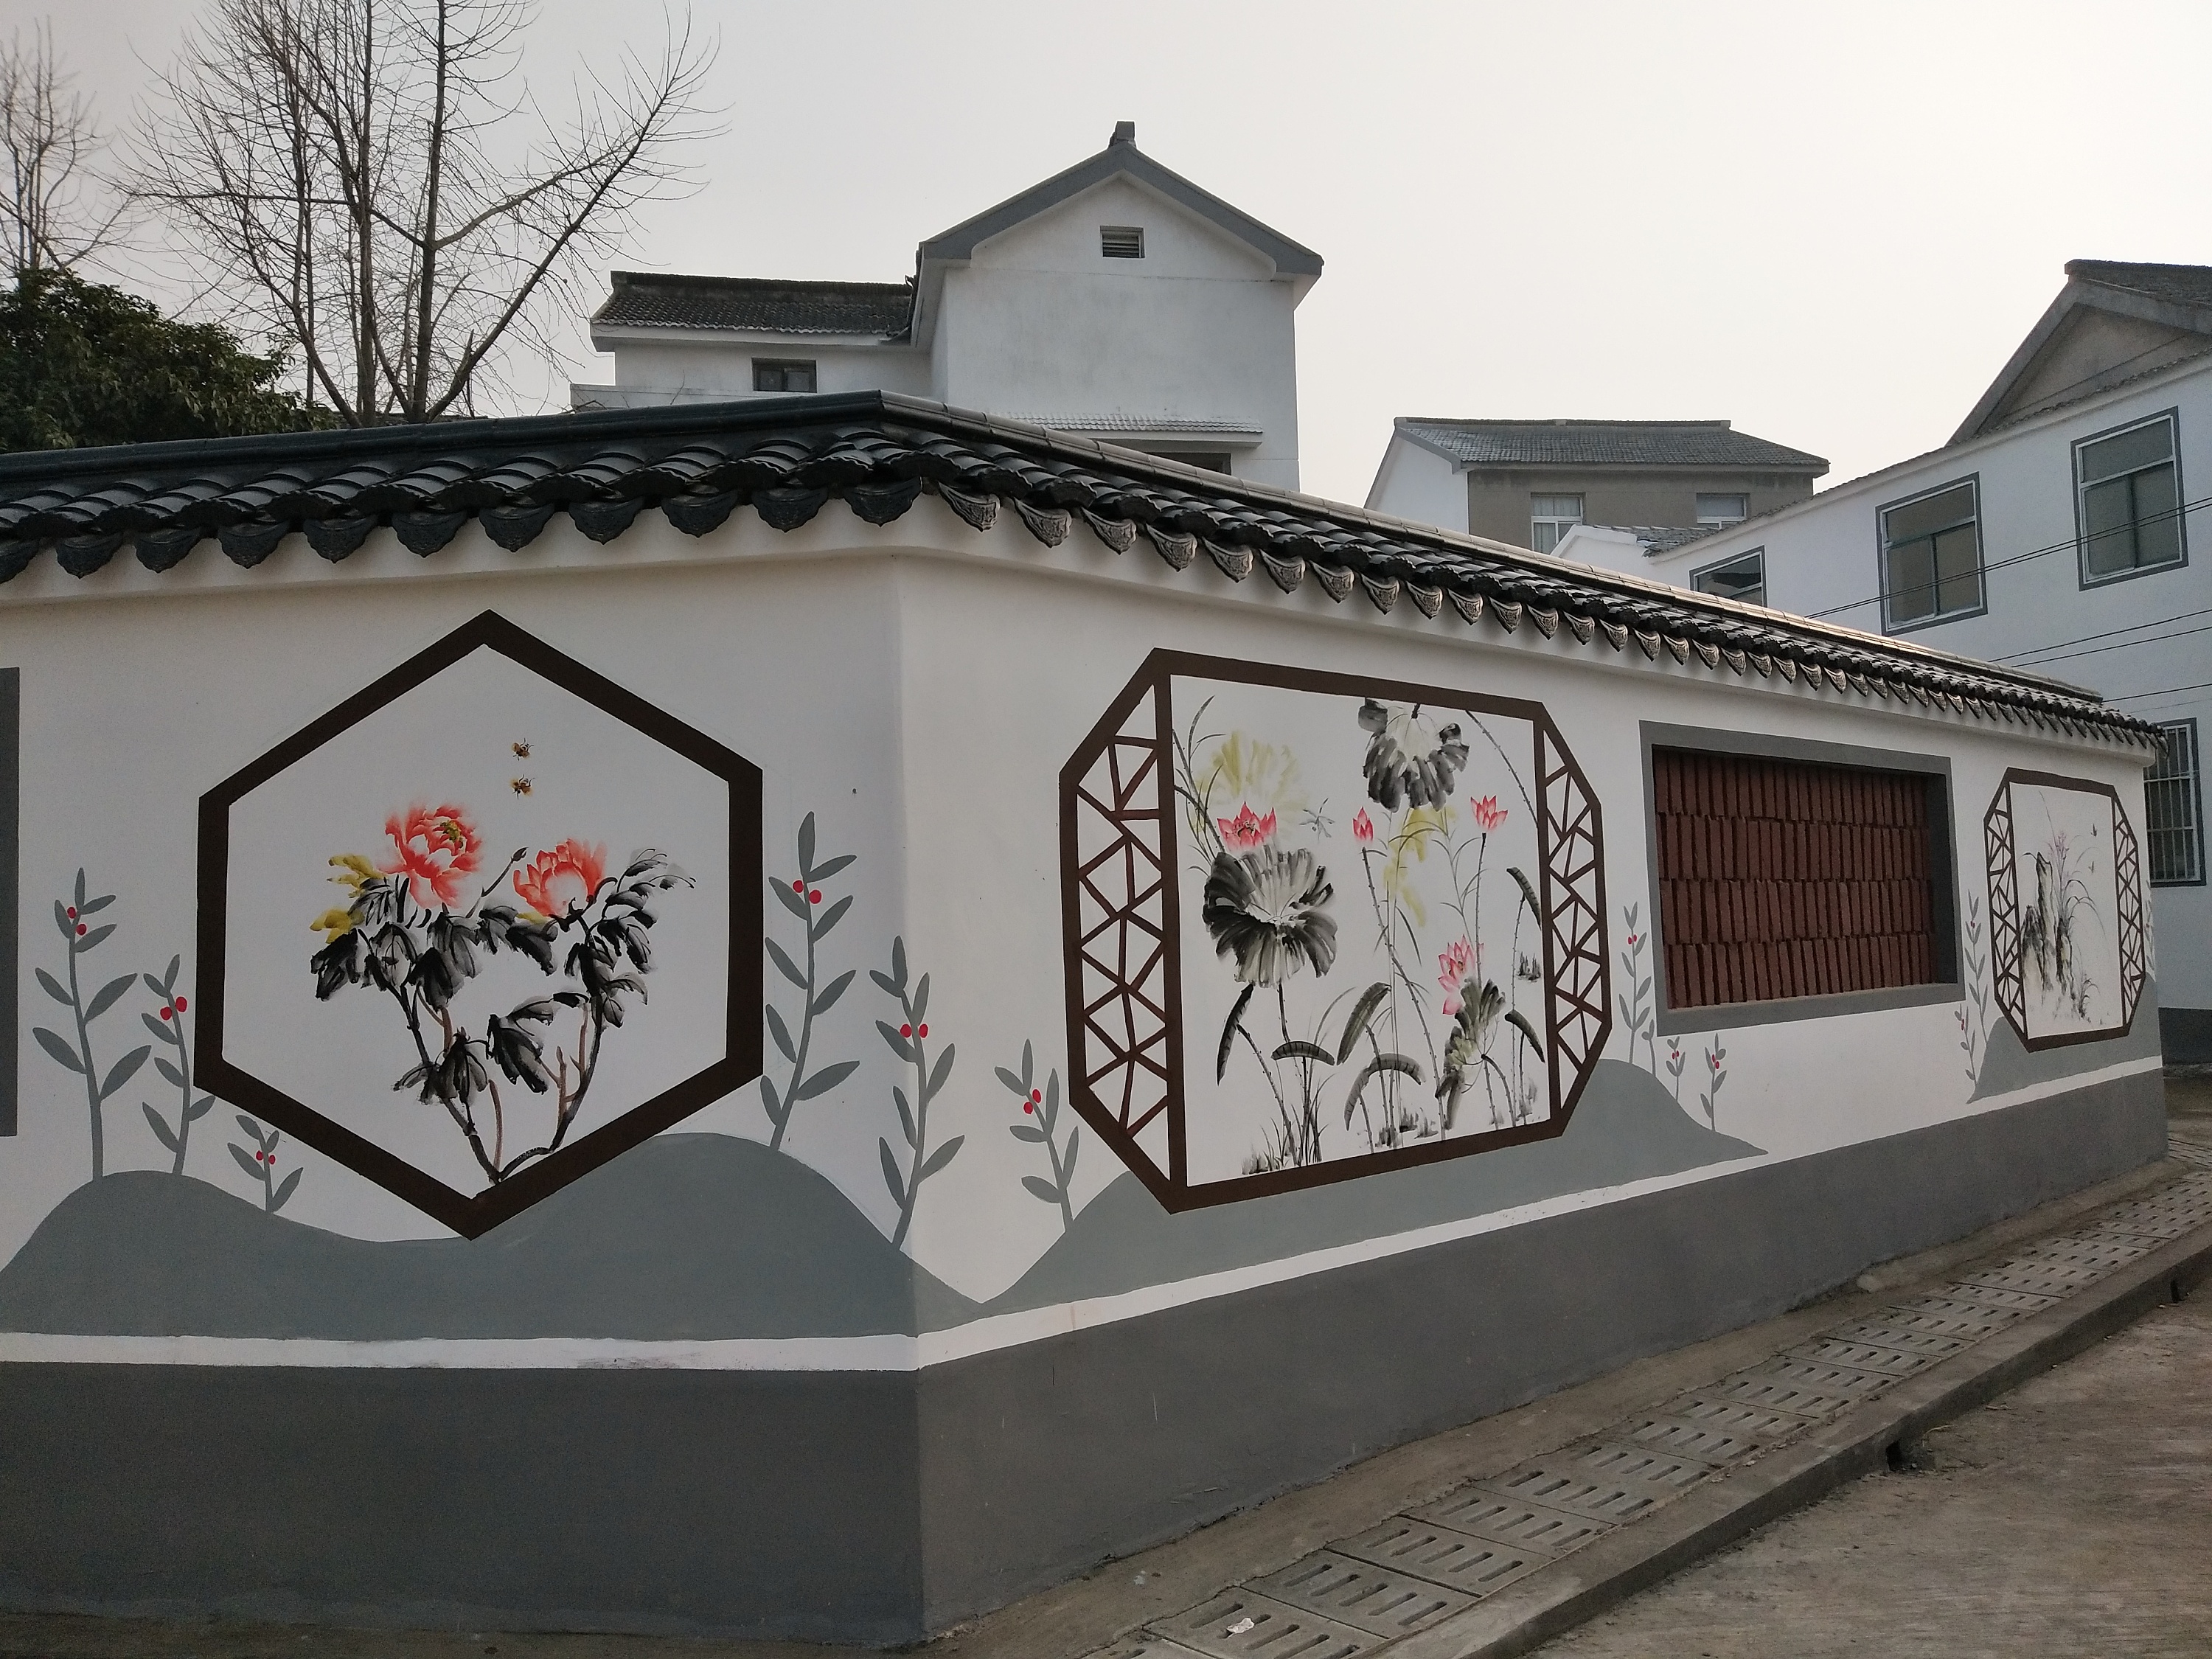 农村小院迎门墙图片大全：唐语景观砖雕设计 农村影壁墙图片大全 尺寸 大门-秀和风水